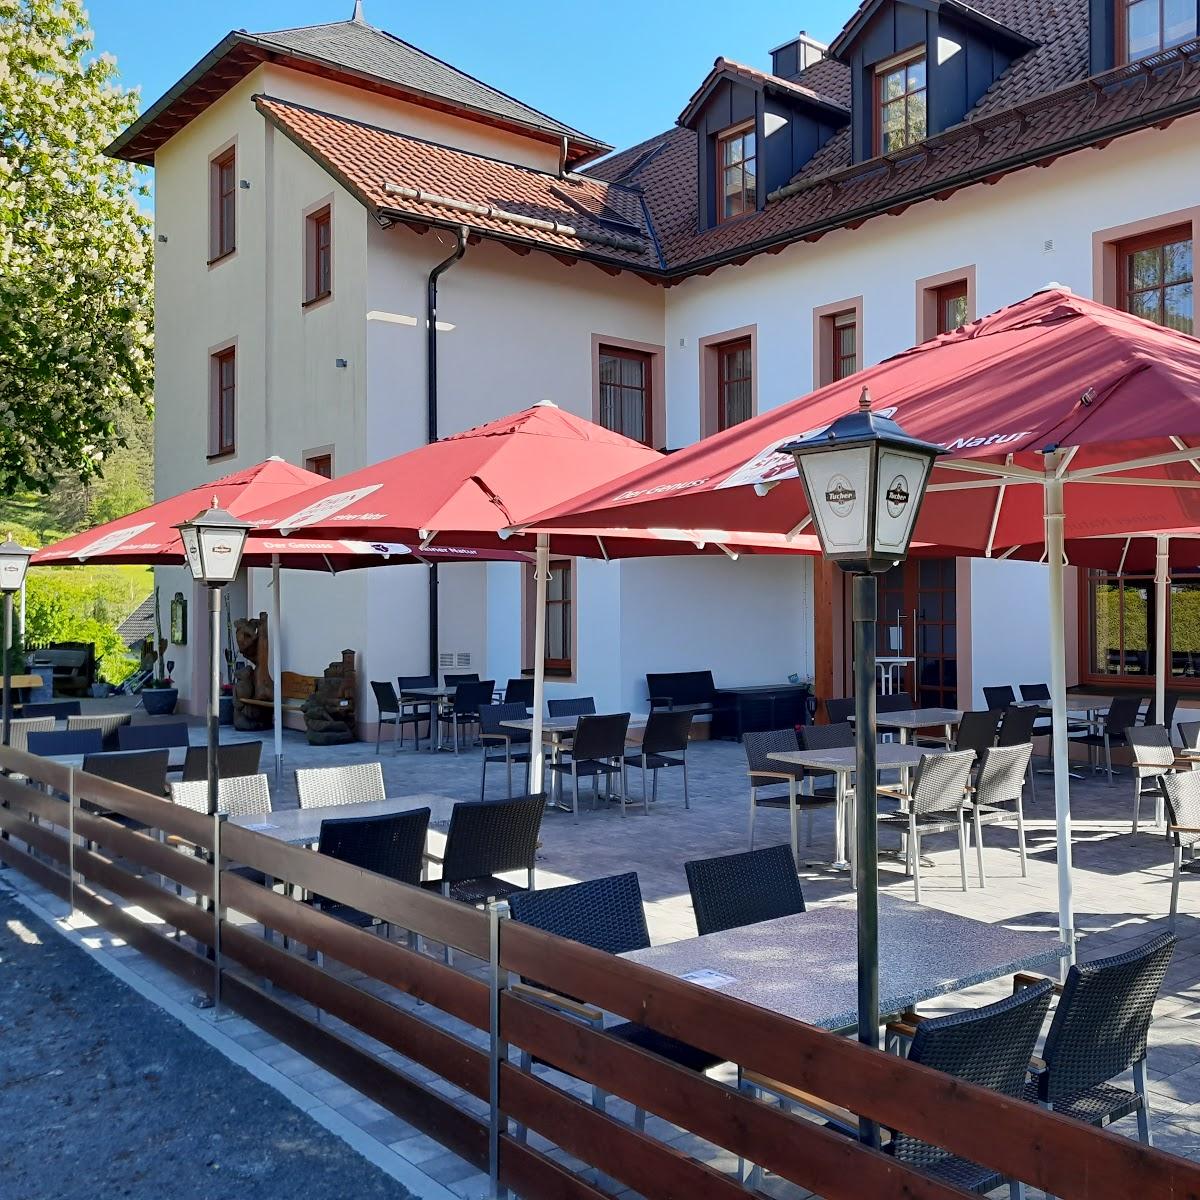 Restaurant "Landgasthaus Bärenburg" in Nüdlingen